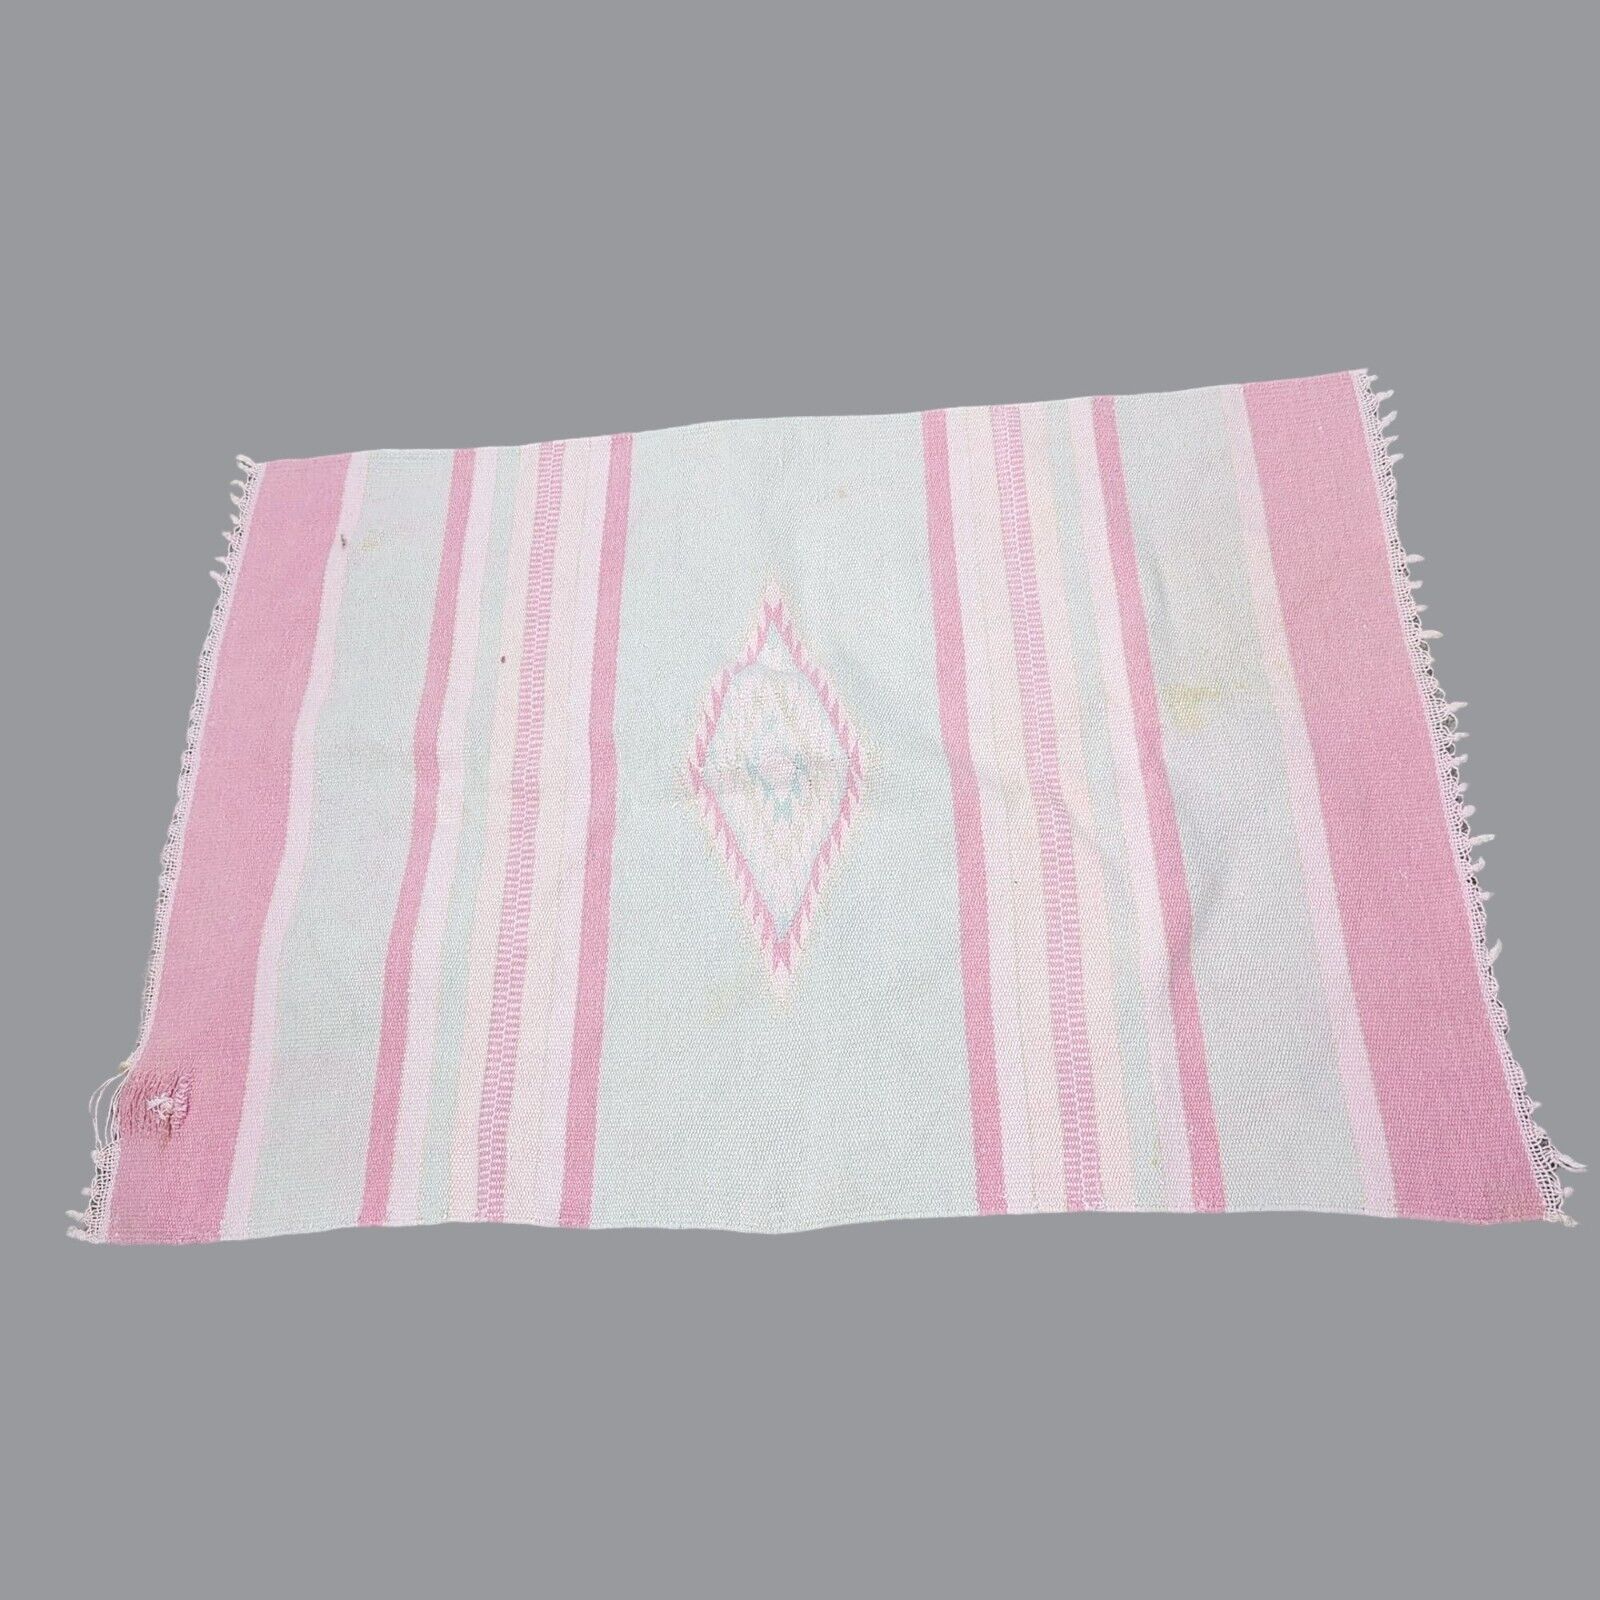 Vintage Indigenous Tapestry Knit Rug Pink